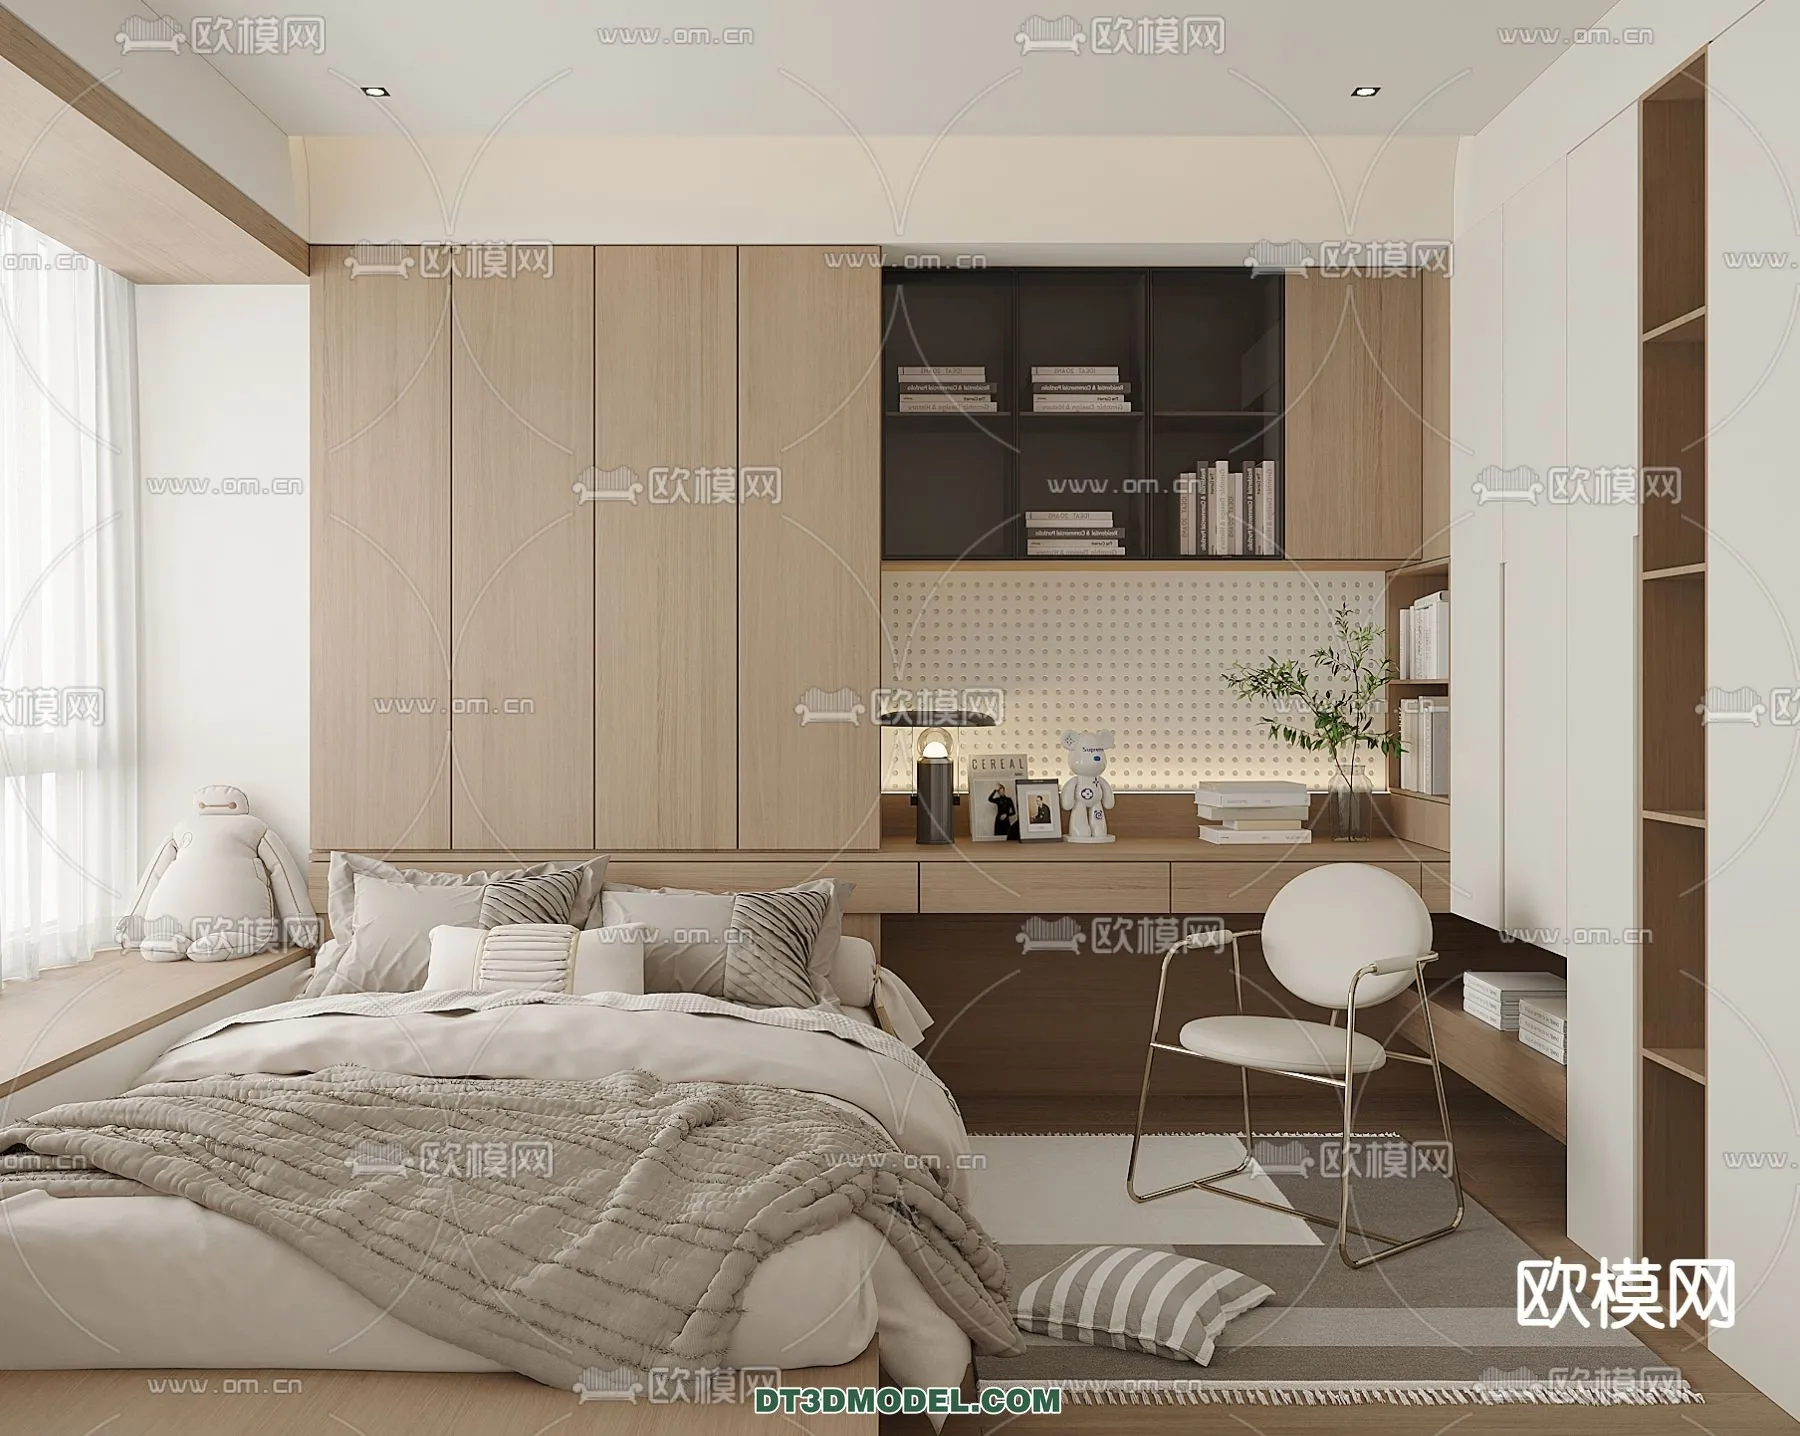 Tatami Bedroom – Japan Bedroom – 3D Scene – 069